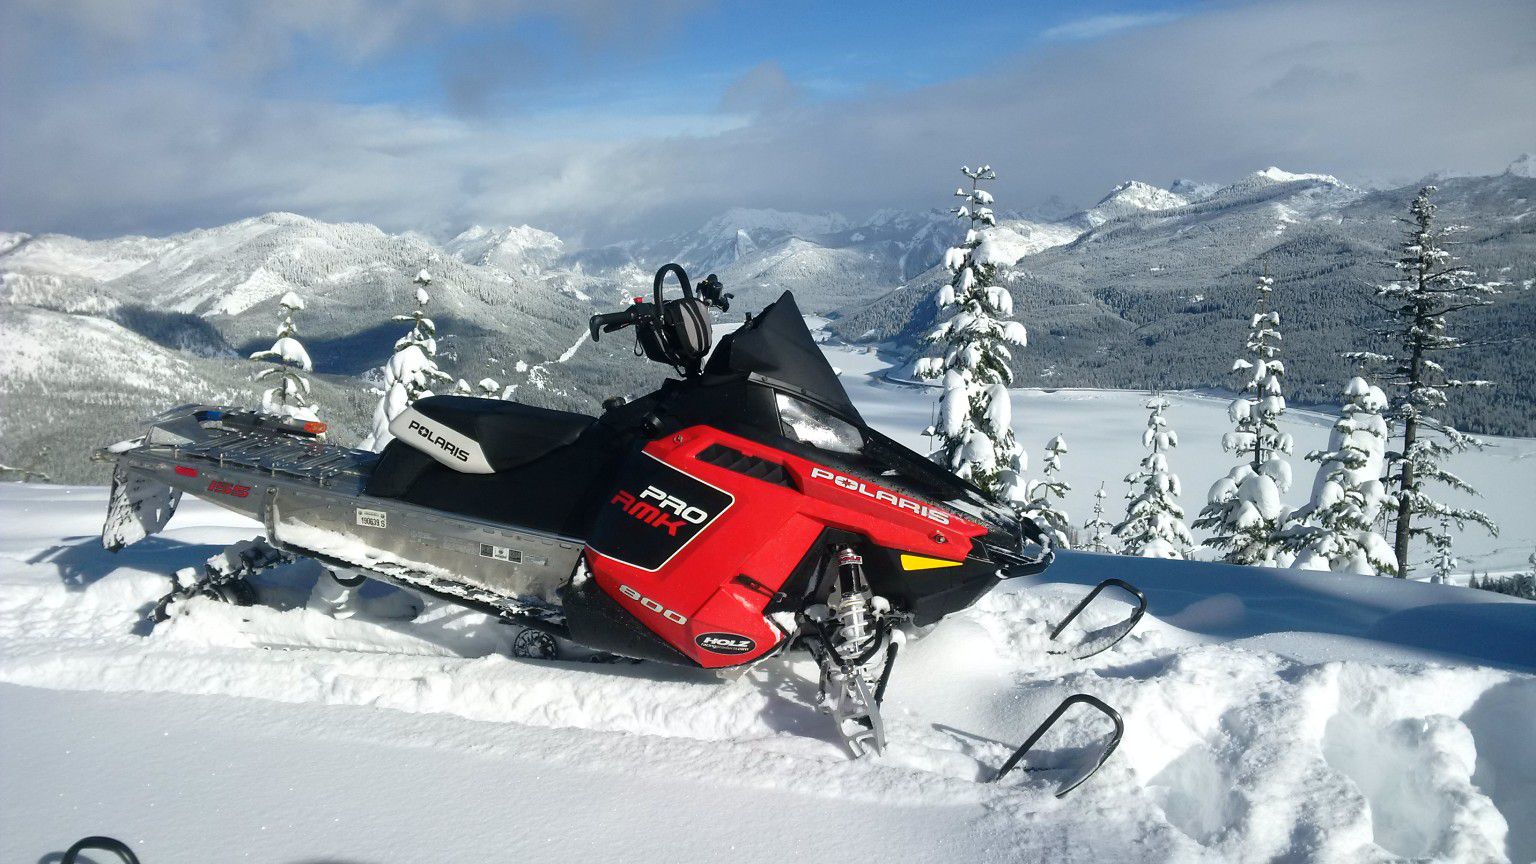 2011 Polaris RMK 800 Pro snowmobile